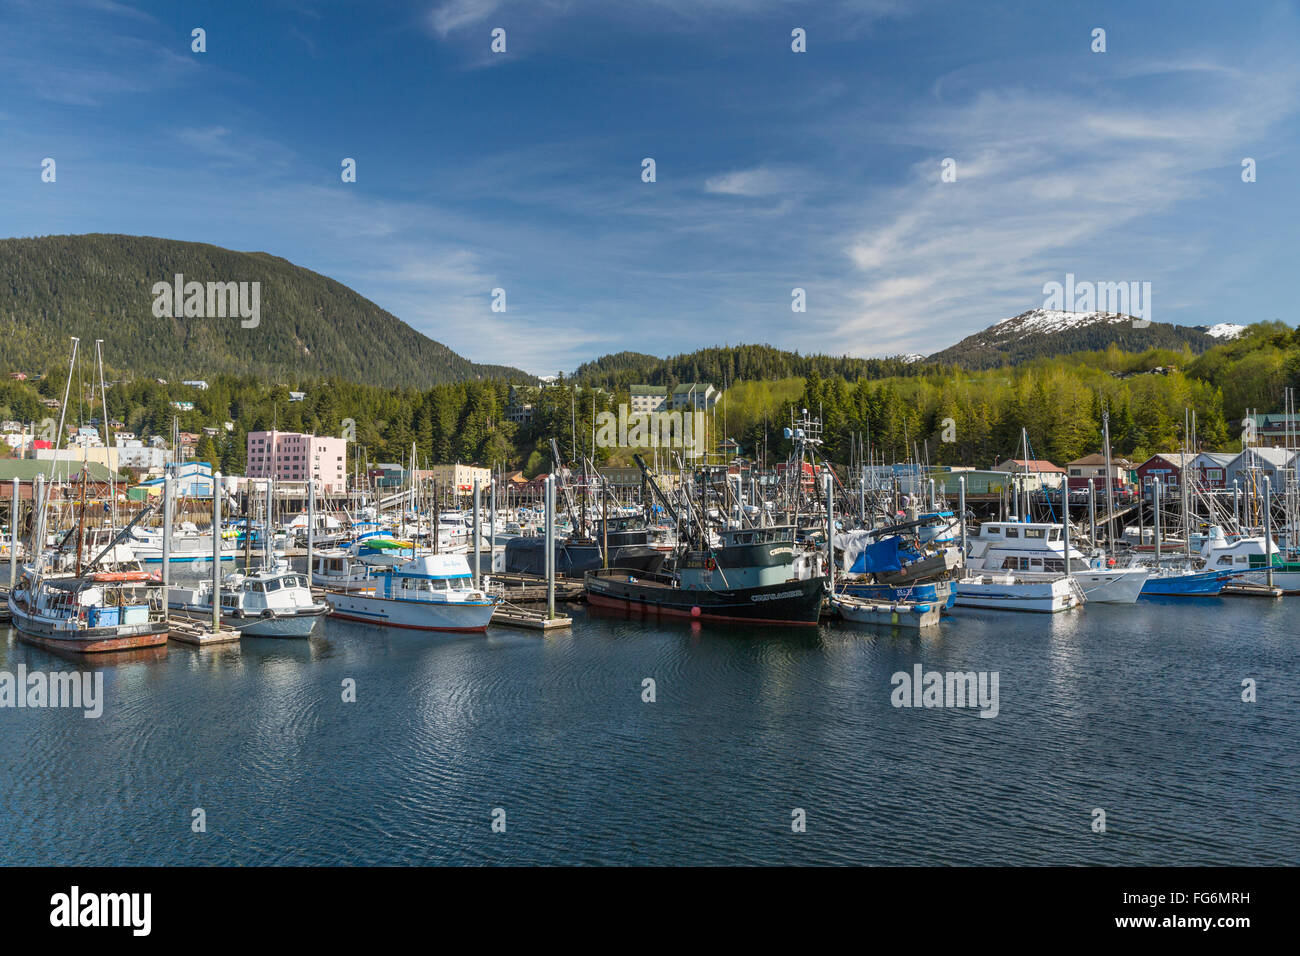 Voiliers et bateaux de pêche à quai dans le port de Ketchikan le long de la rue du Ruisseau, le sud-est de l'Alaska, le printemps Banque D'Images